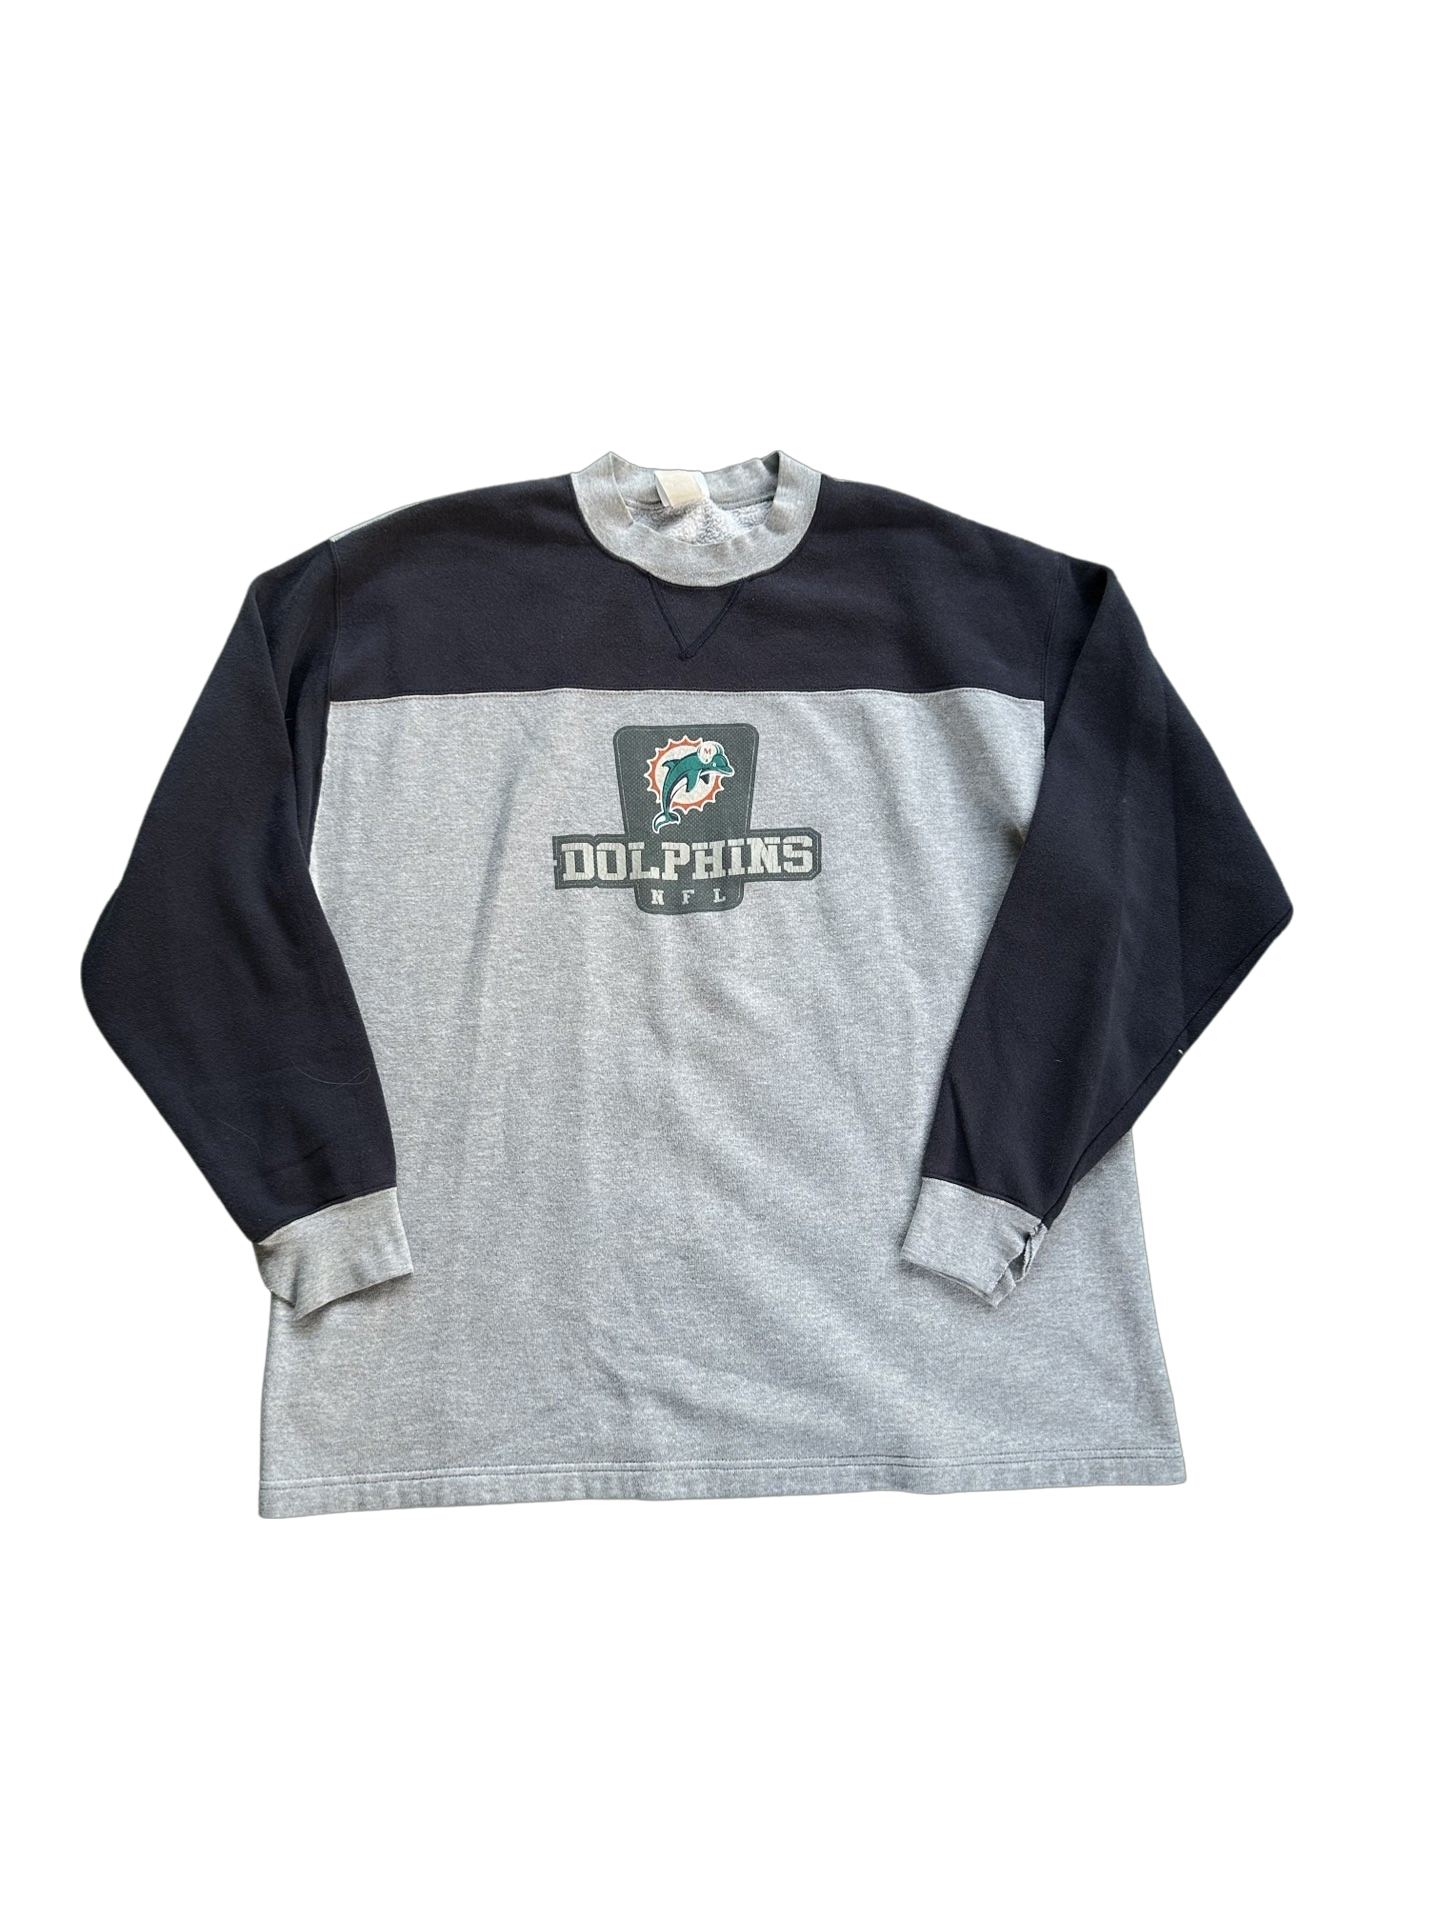 Vintage Miami Dolphins Crewneck Sweatshirt